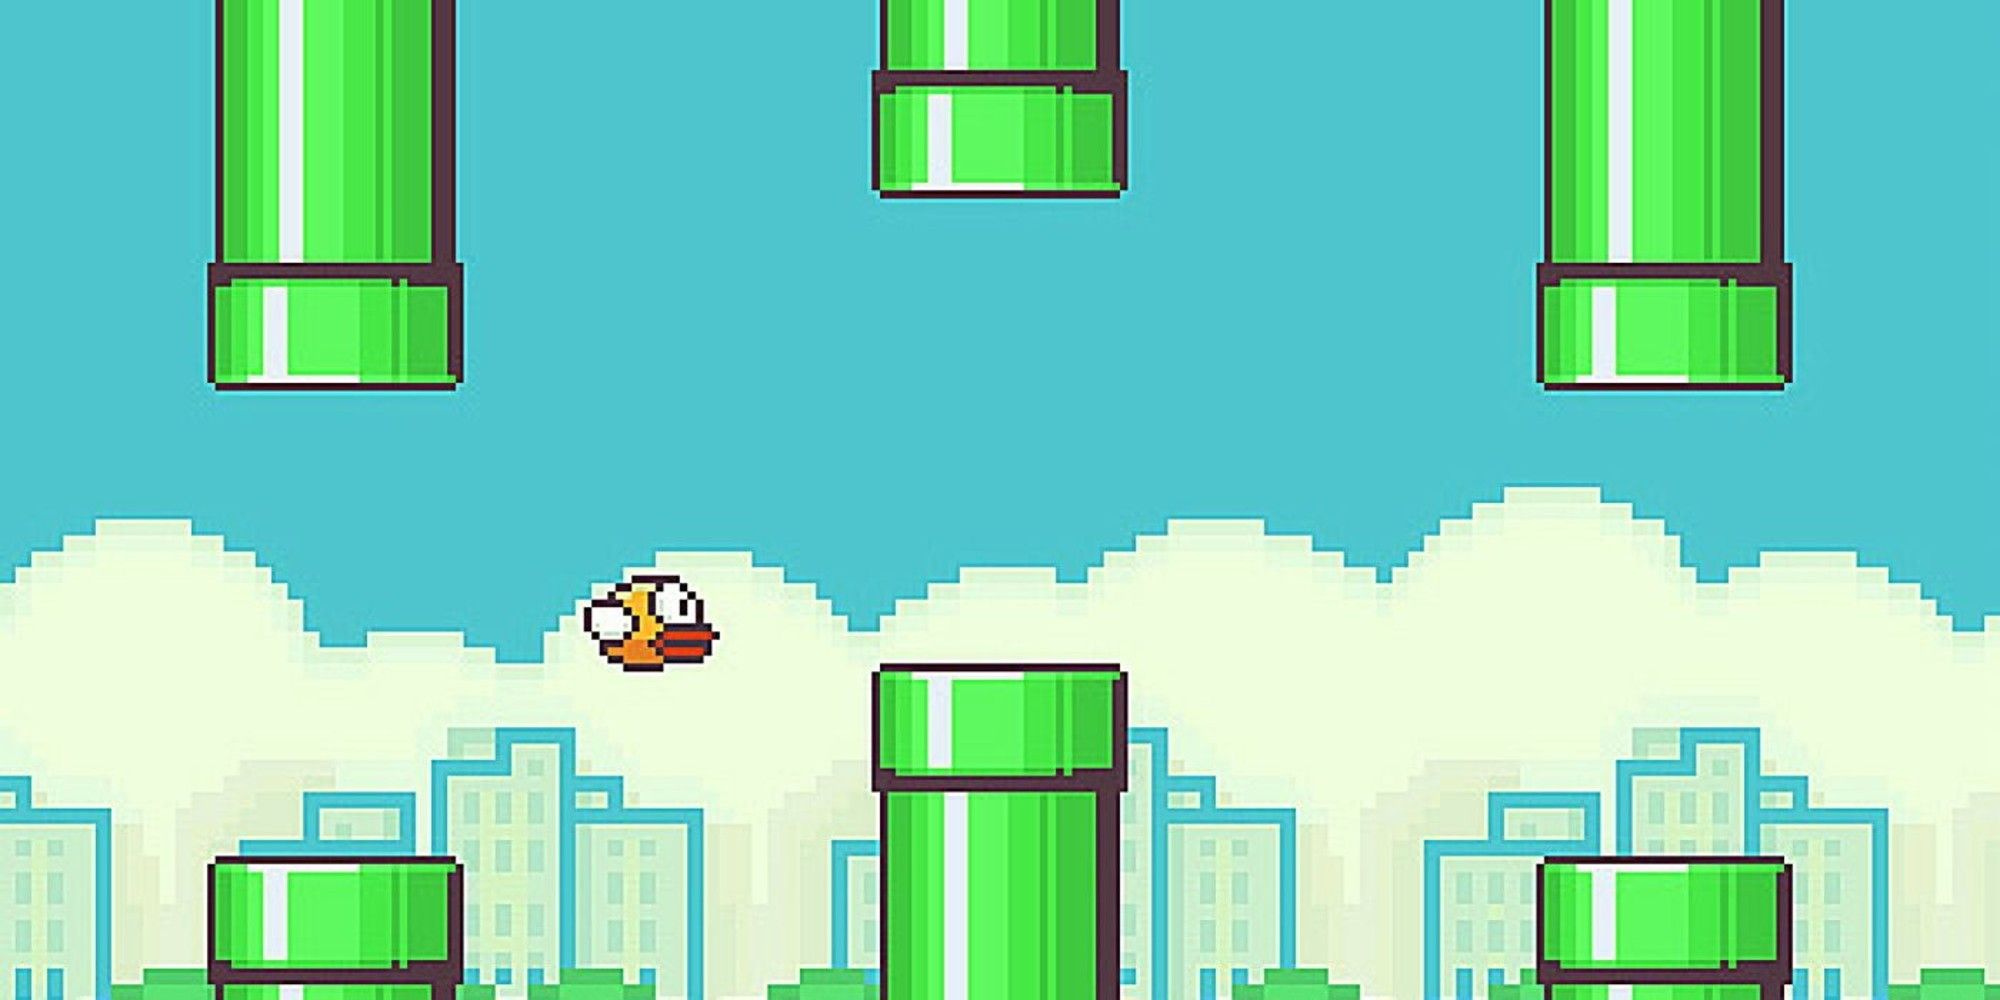 flappy bird gameplay